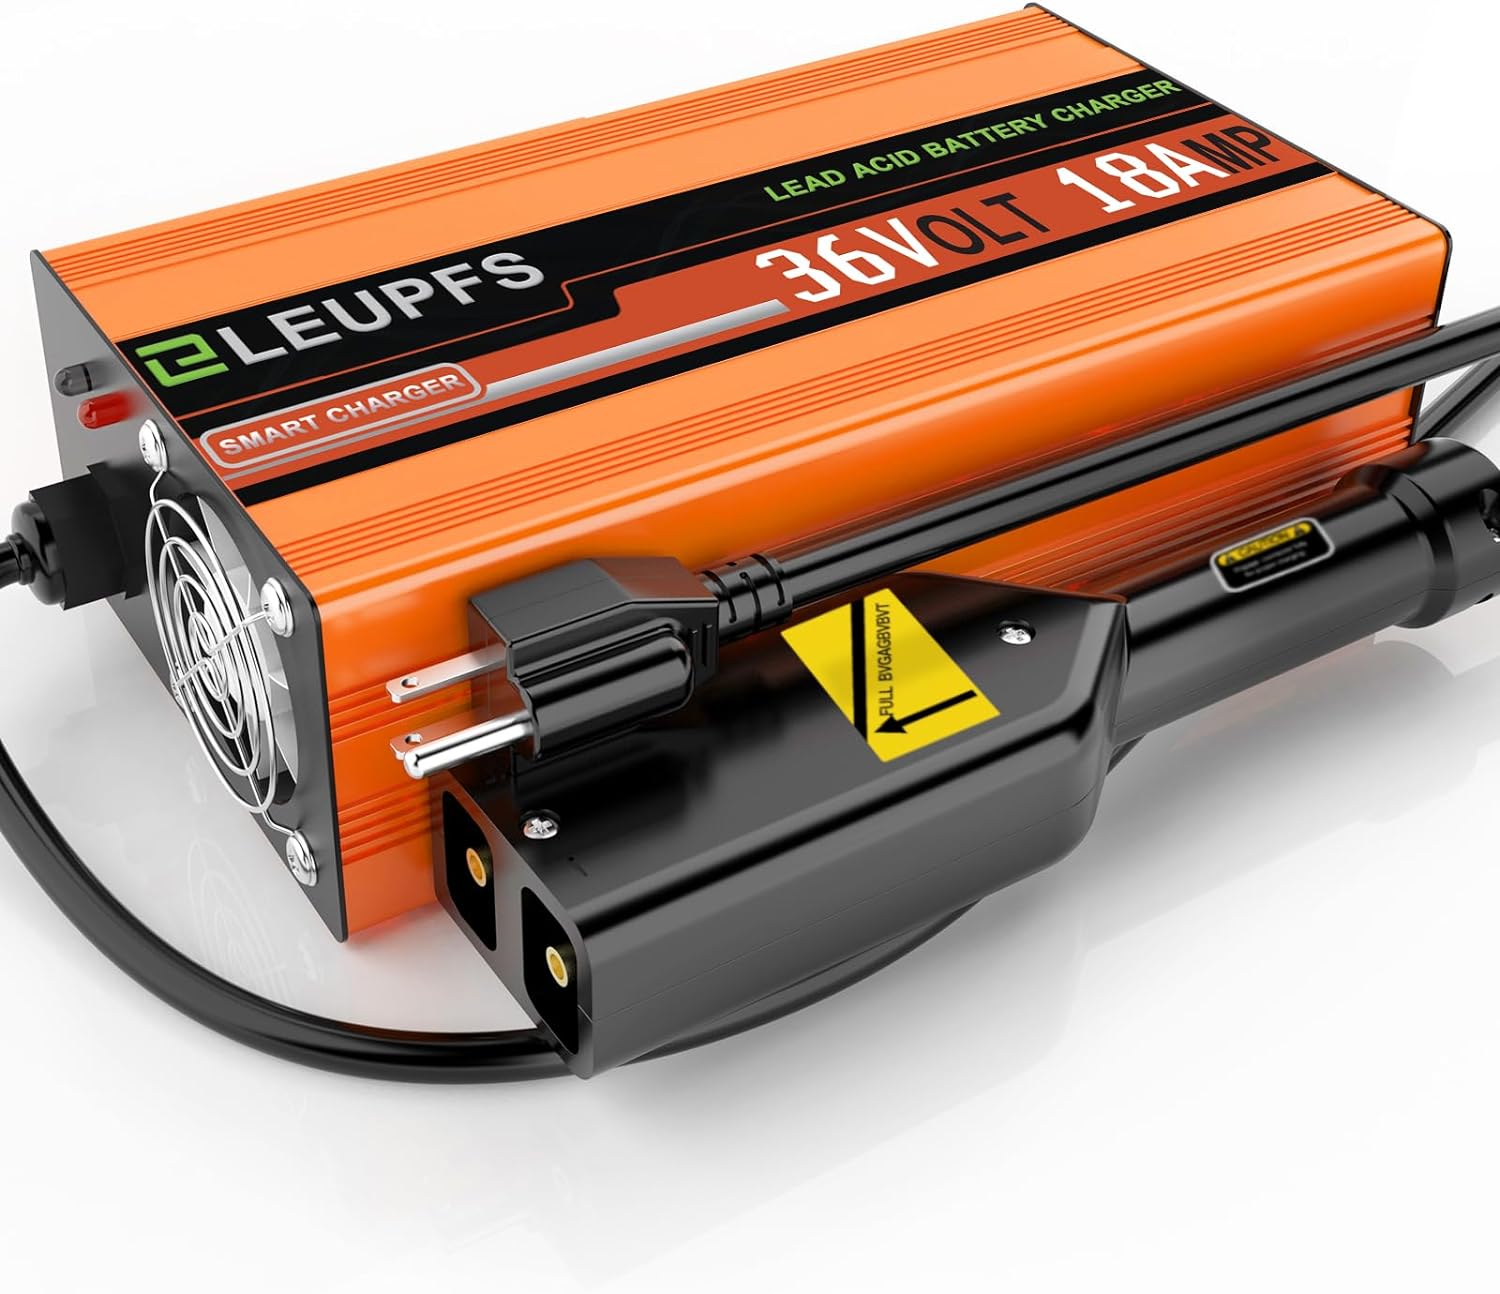 Eleupfs Golf Cart Battery Charger